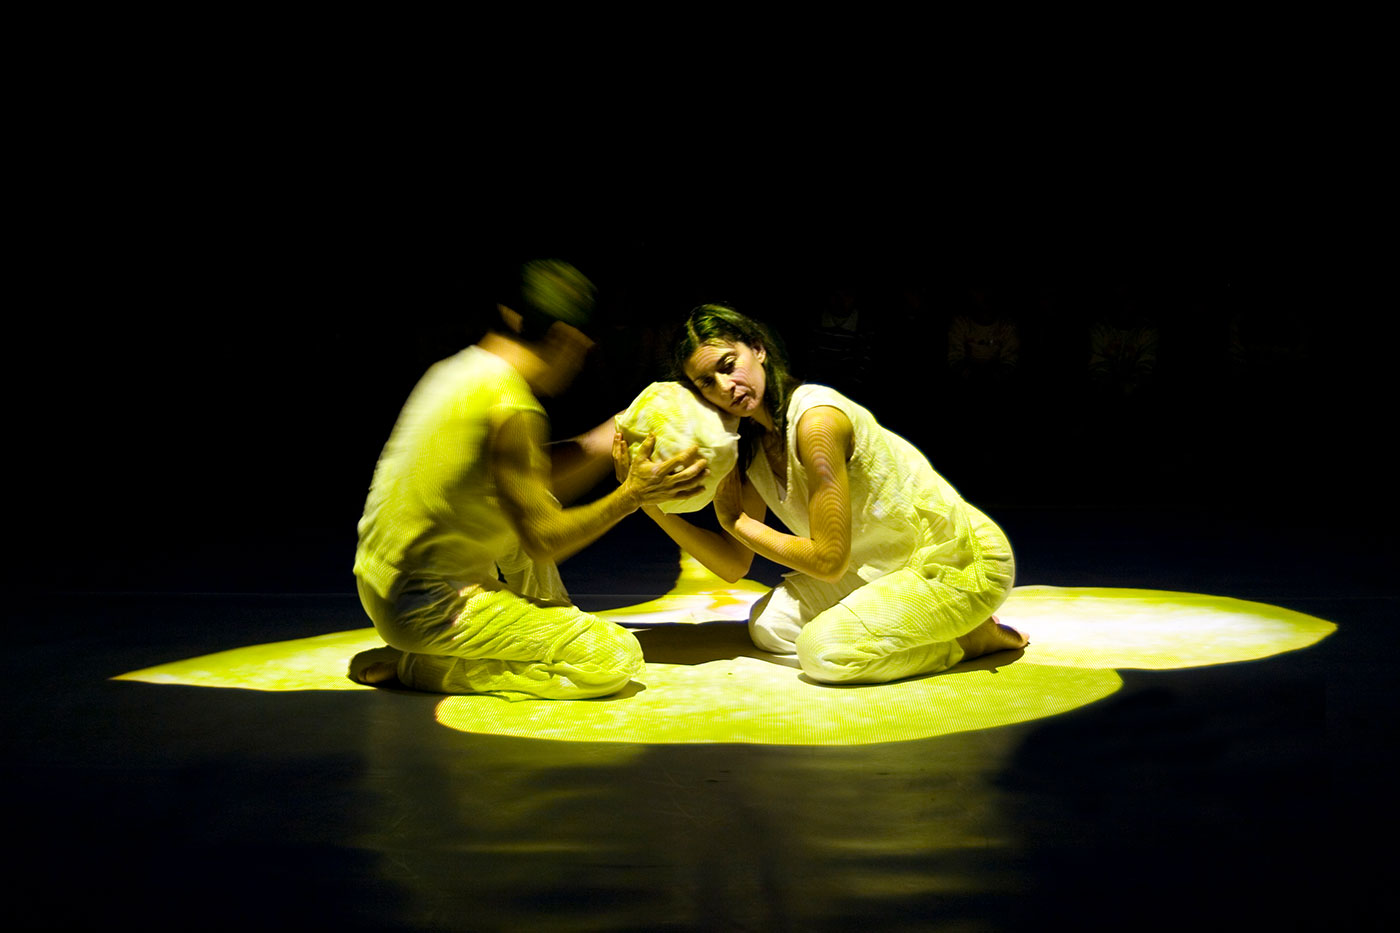 Kaksi tanssijaa pitelee munaa, josta kuoriutuu myöhemmin perhosentoukka.